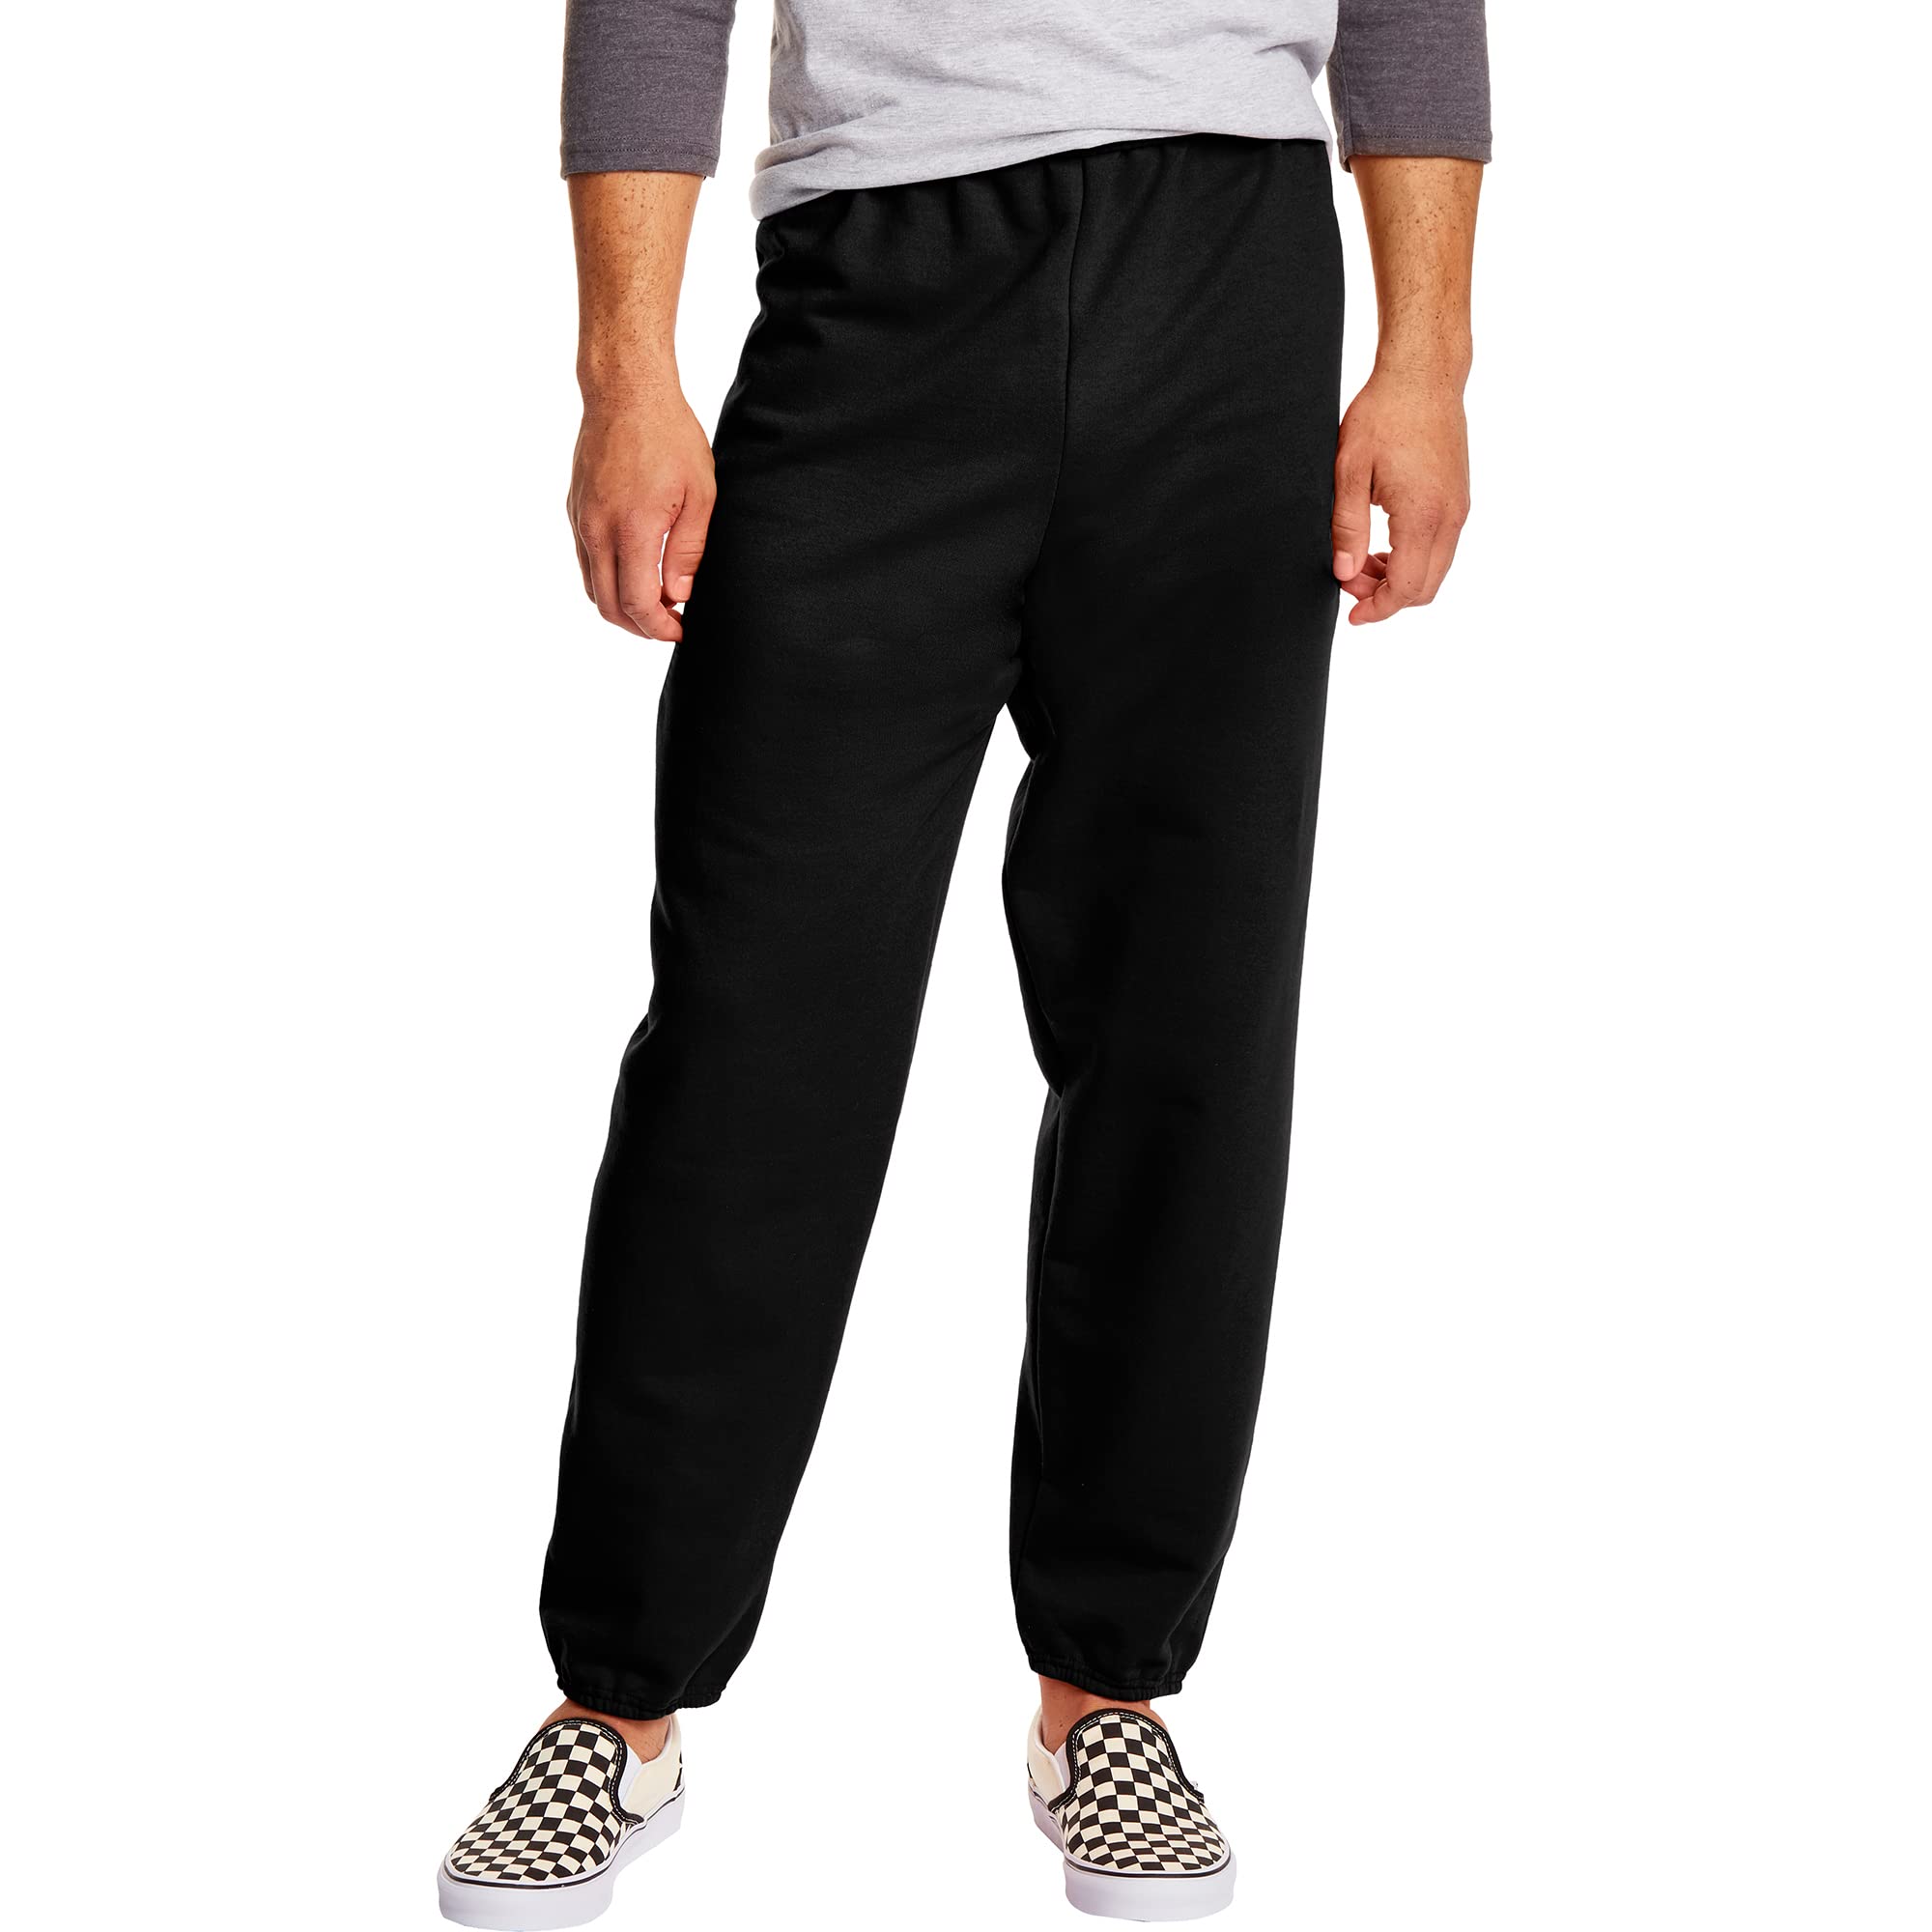 Buy Hanes Men's Sweatpants, EcoSmart Best Sweatpants for Men